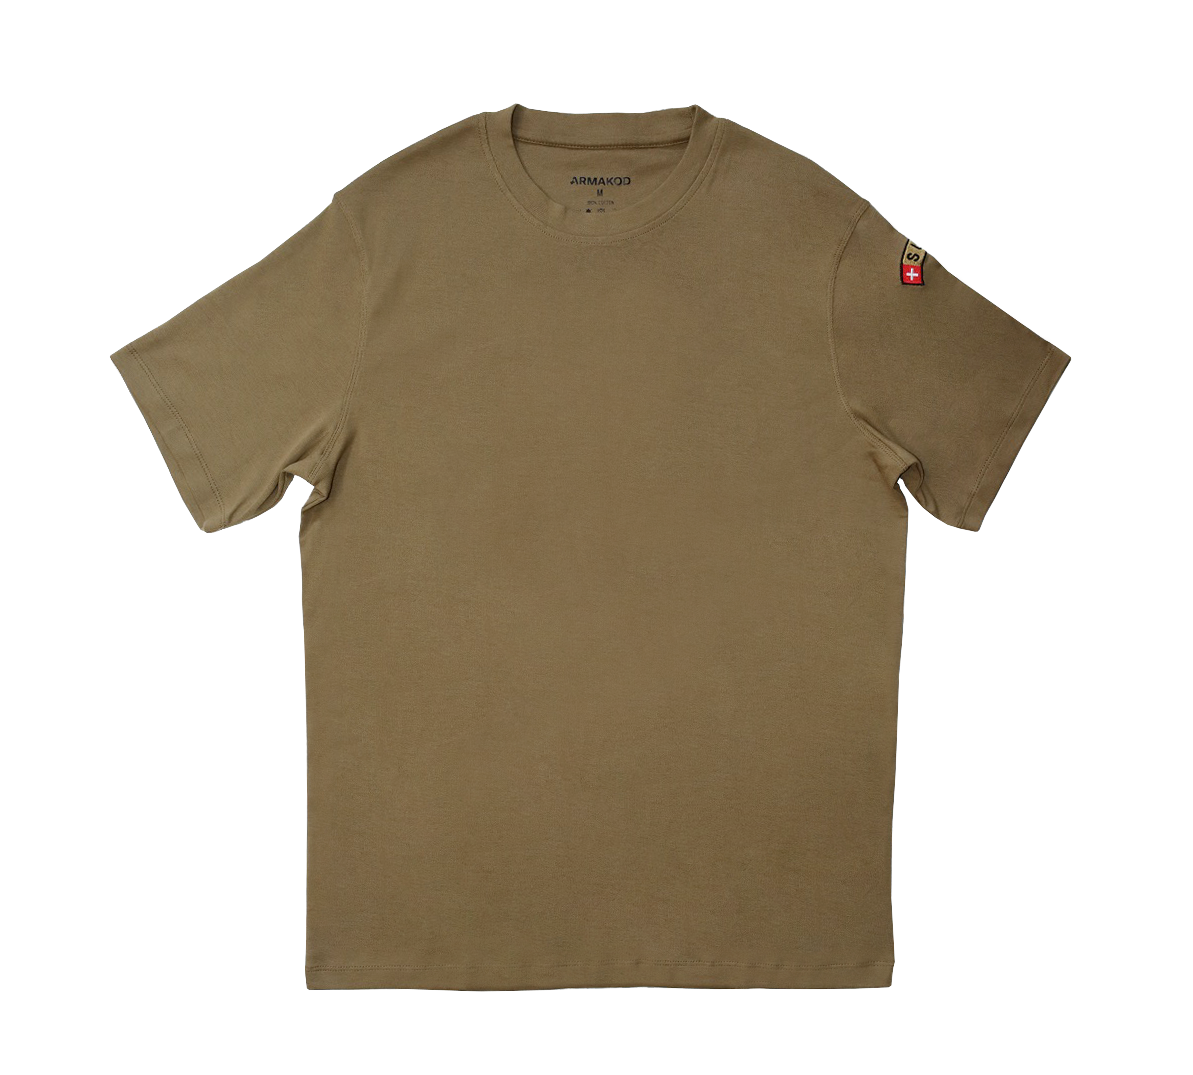 T-shirt Armée Suisse original 2010